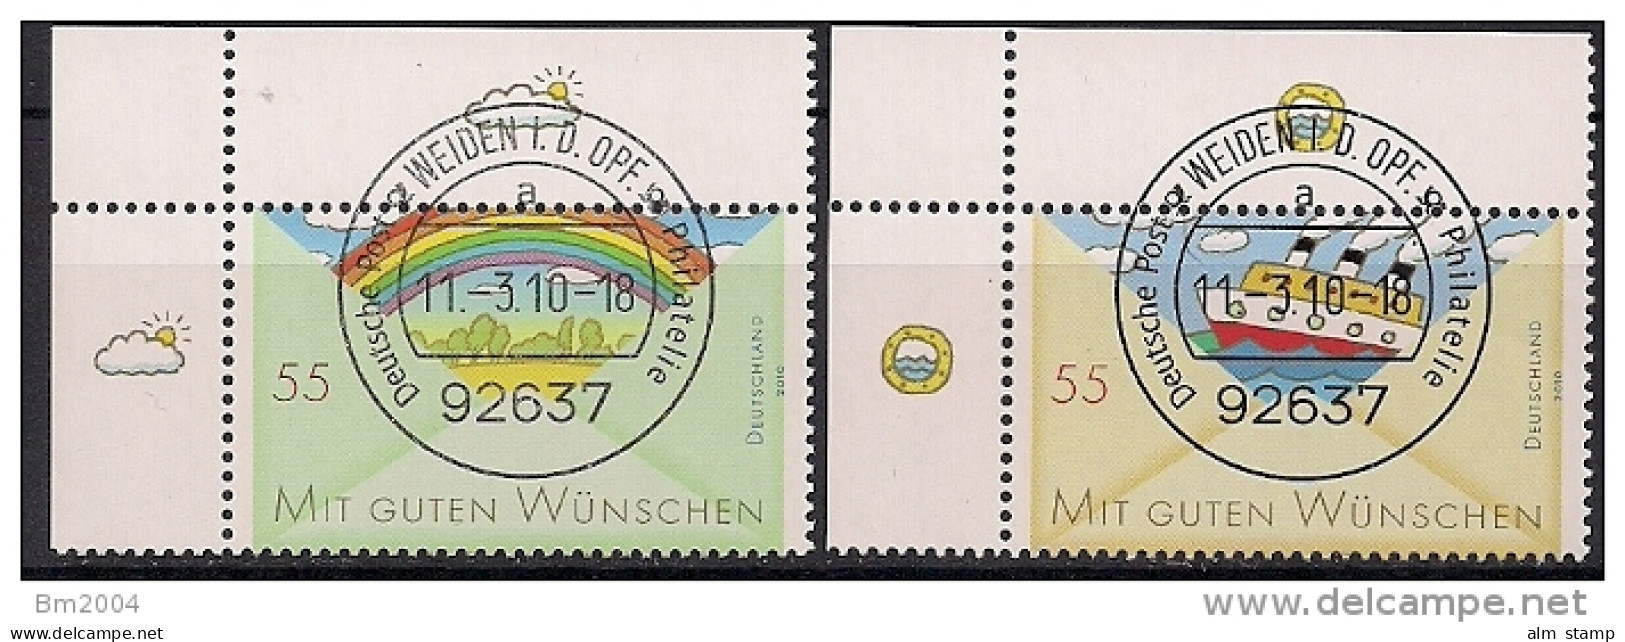 2010 Allem. Fed. Mi. 2786-7 Used EOL Grußmarken - Gebraucht